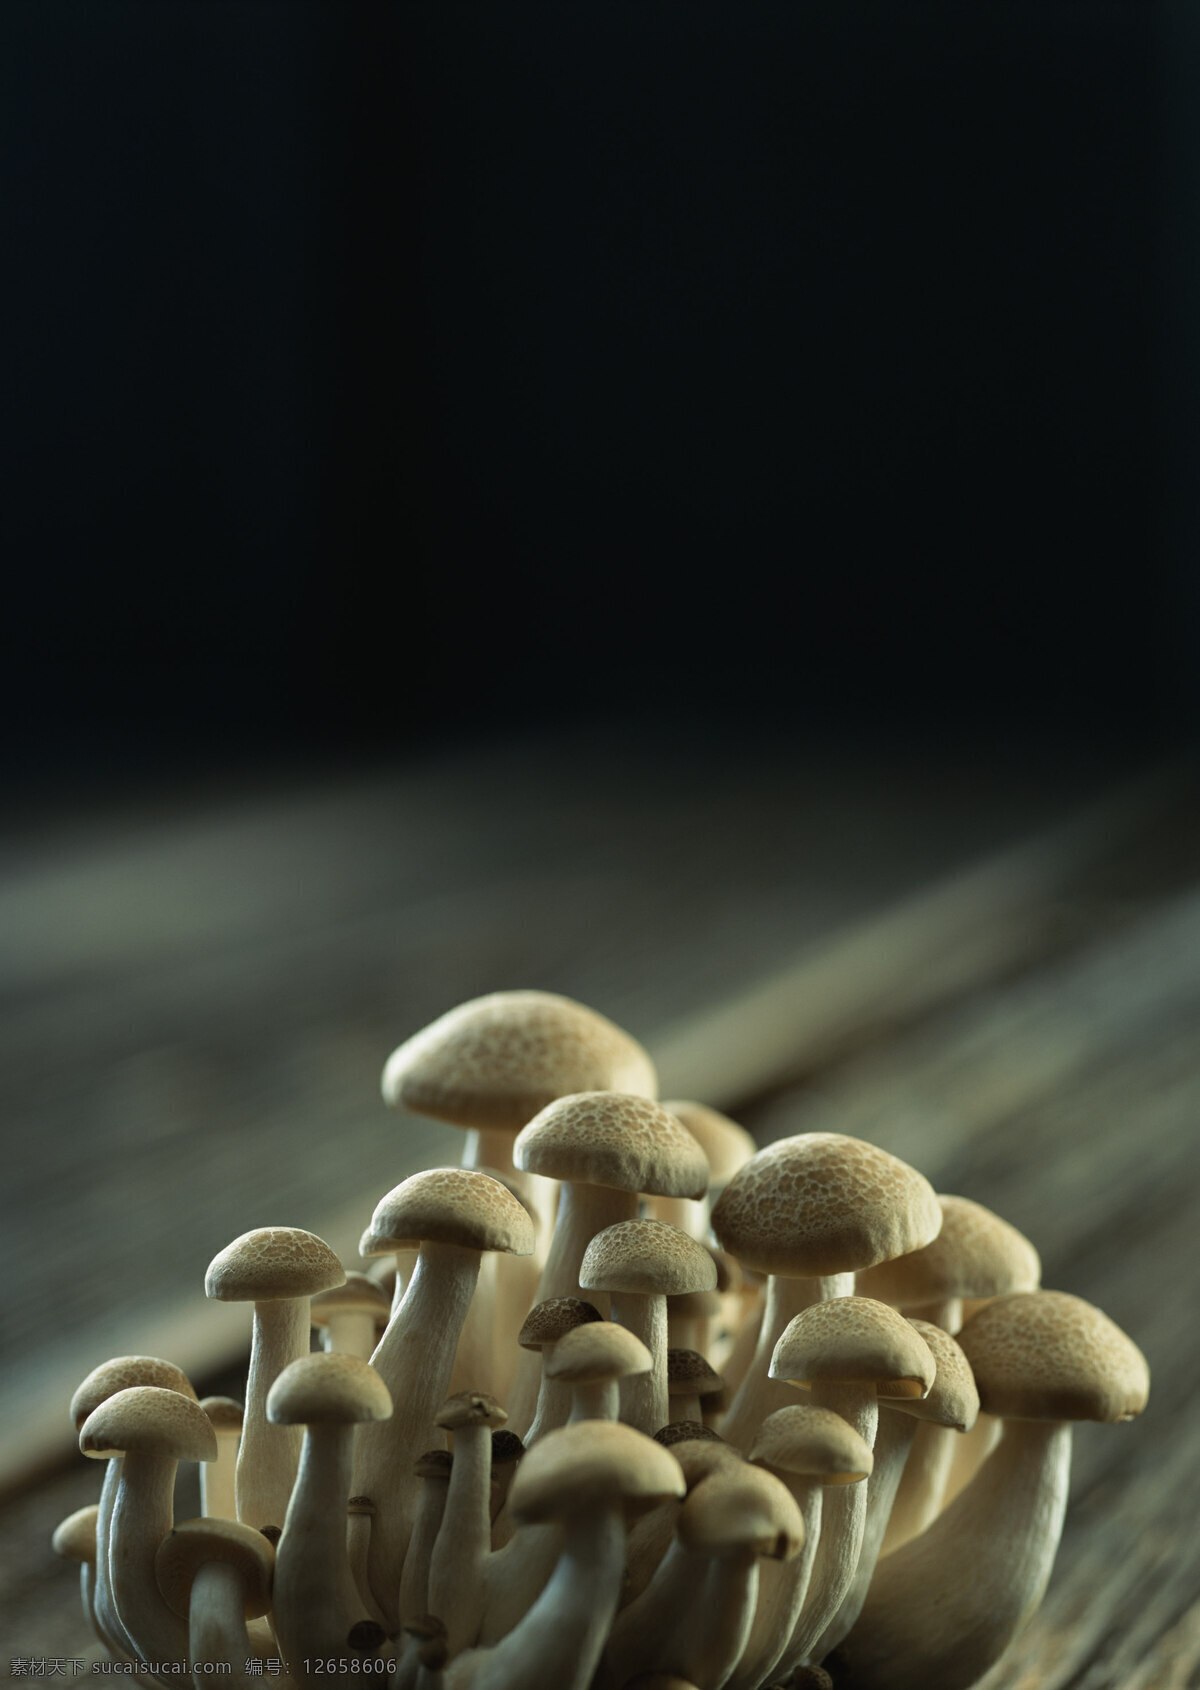 新鲜 蘑菇 新鲜蔬菜 菌 摄影图 高清图片 蘑菇图片 餐饮美食